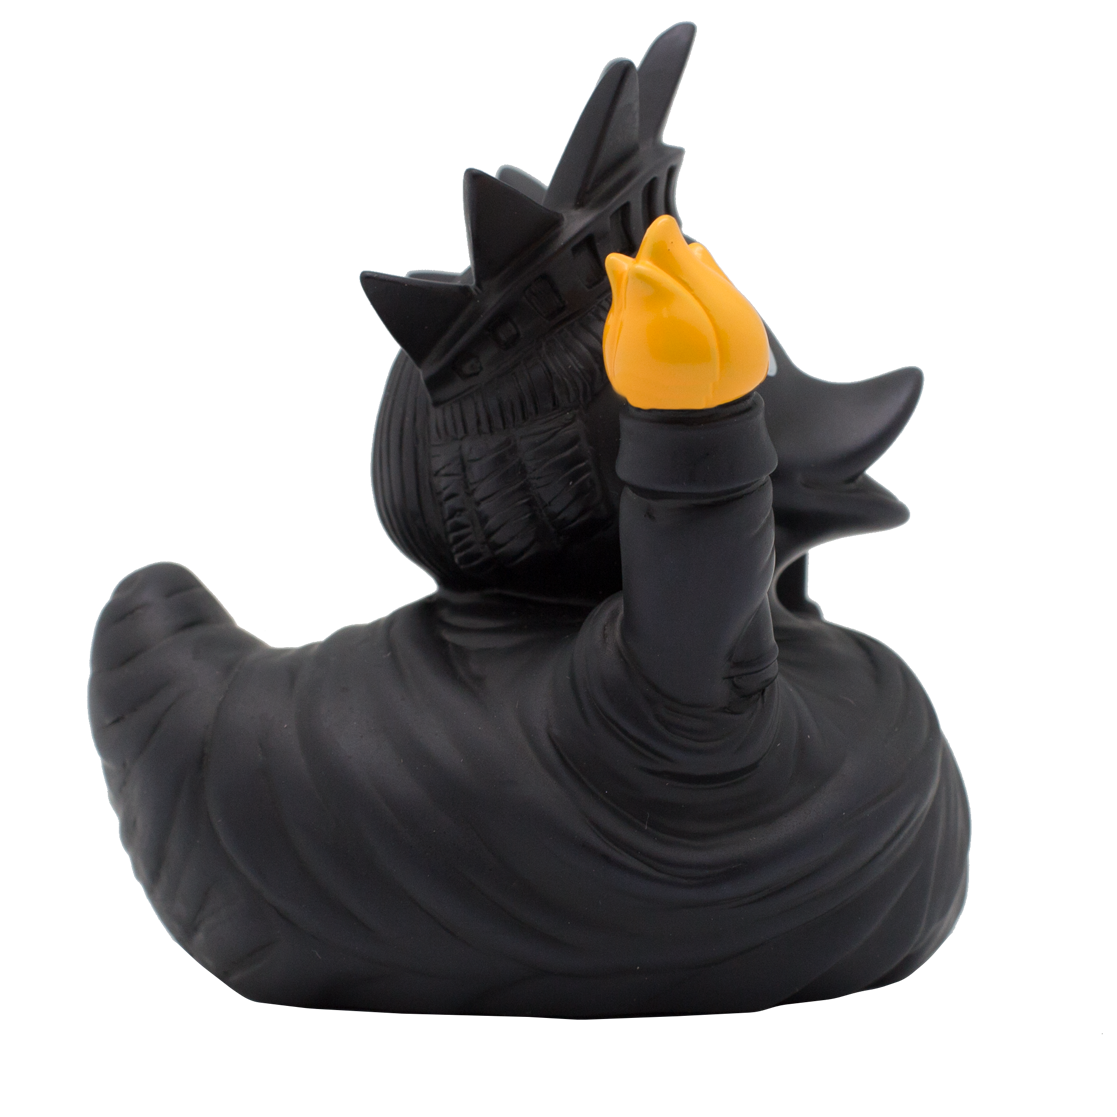 Duck statue af sort frihed